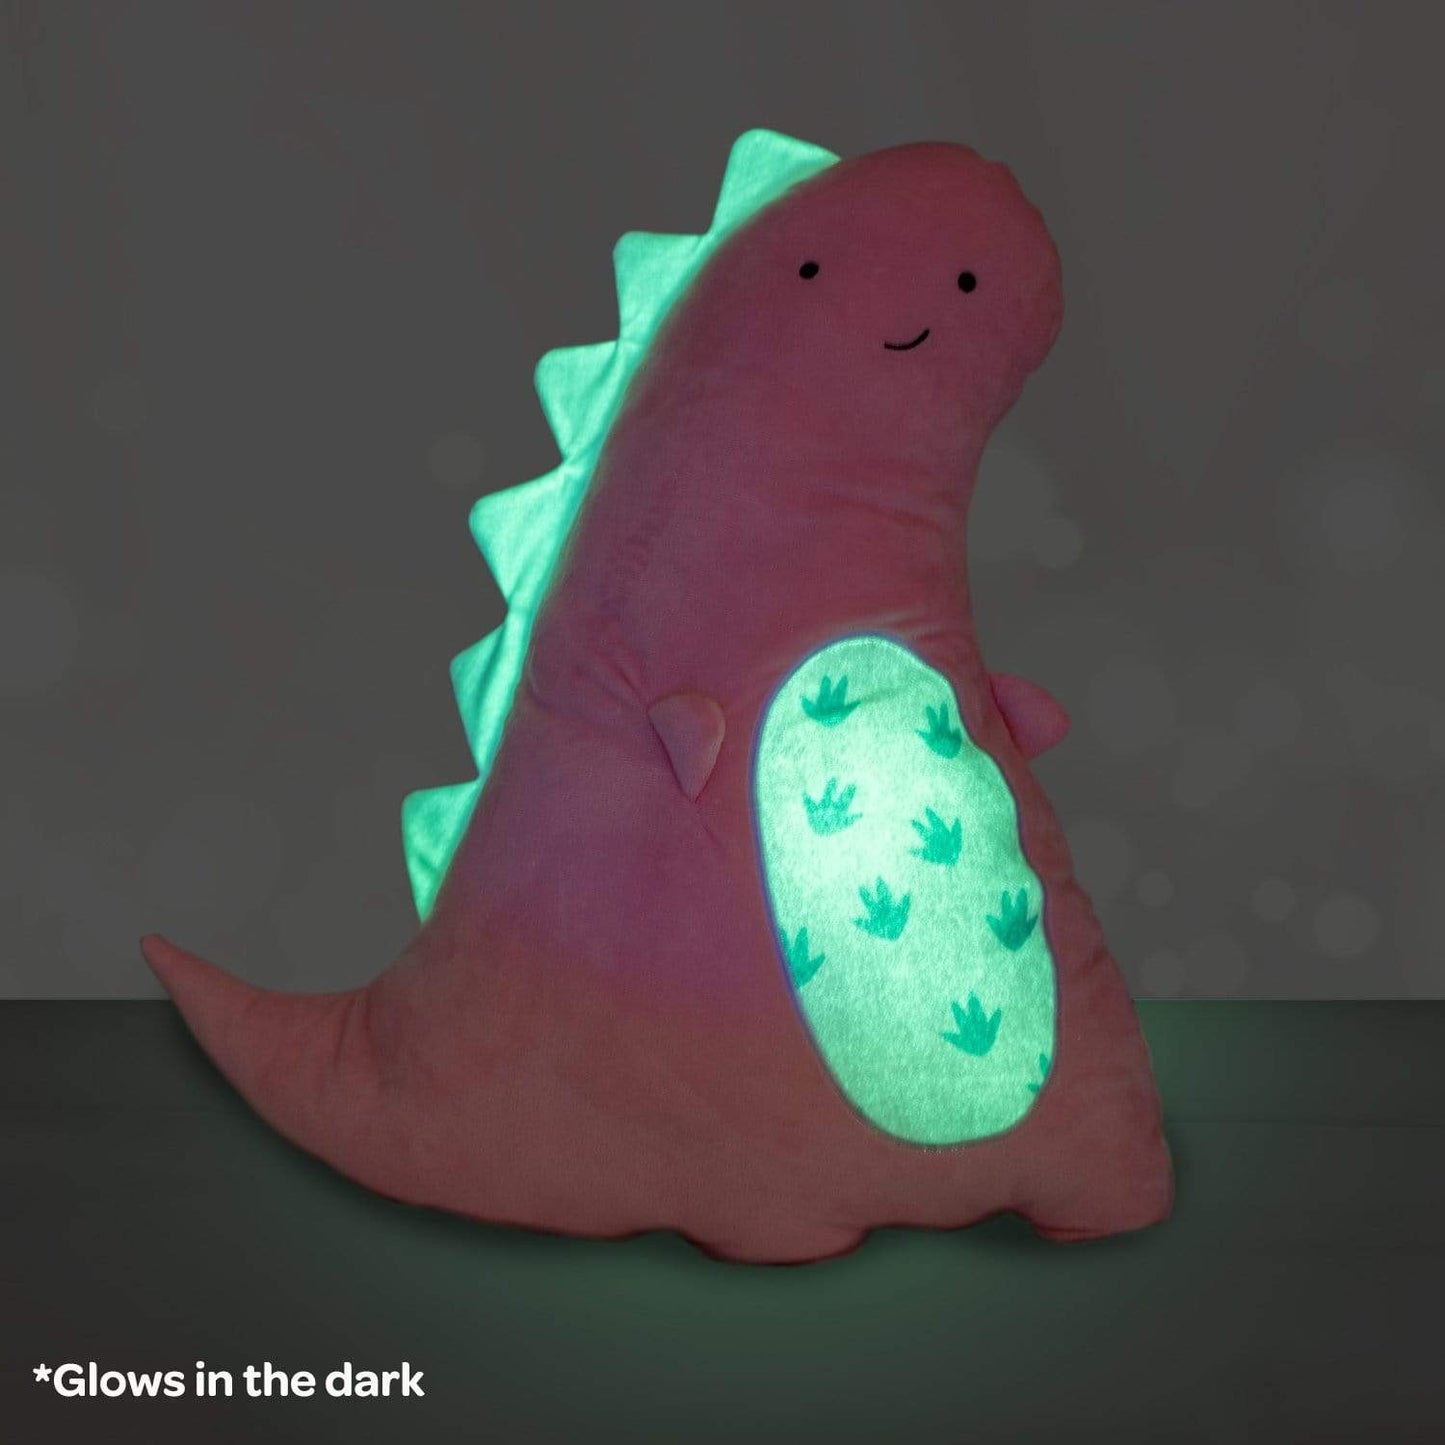 Snuggle & Glow Pet Pillow - Dinosaur